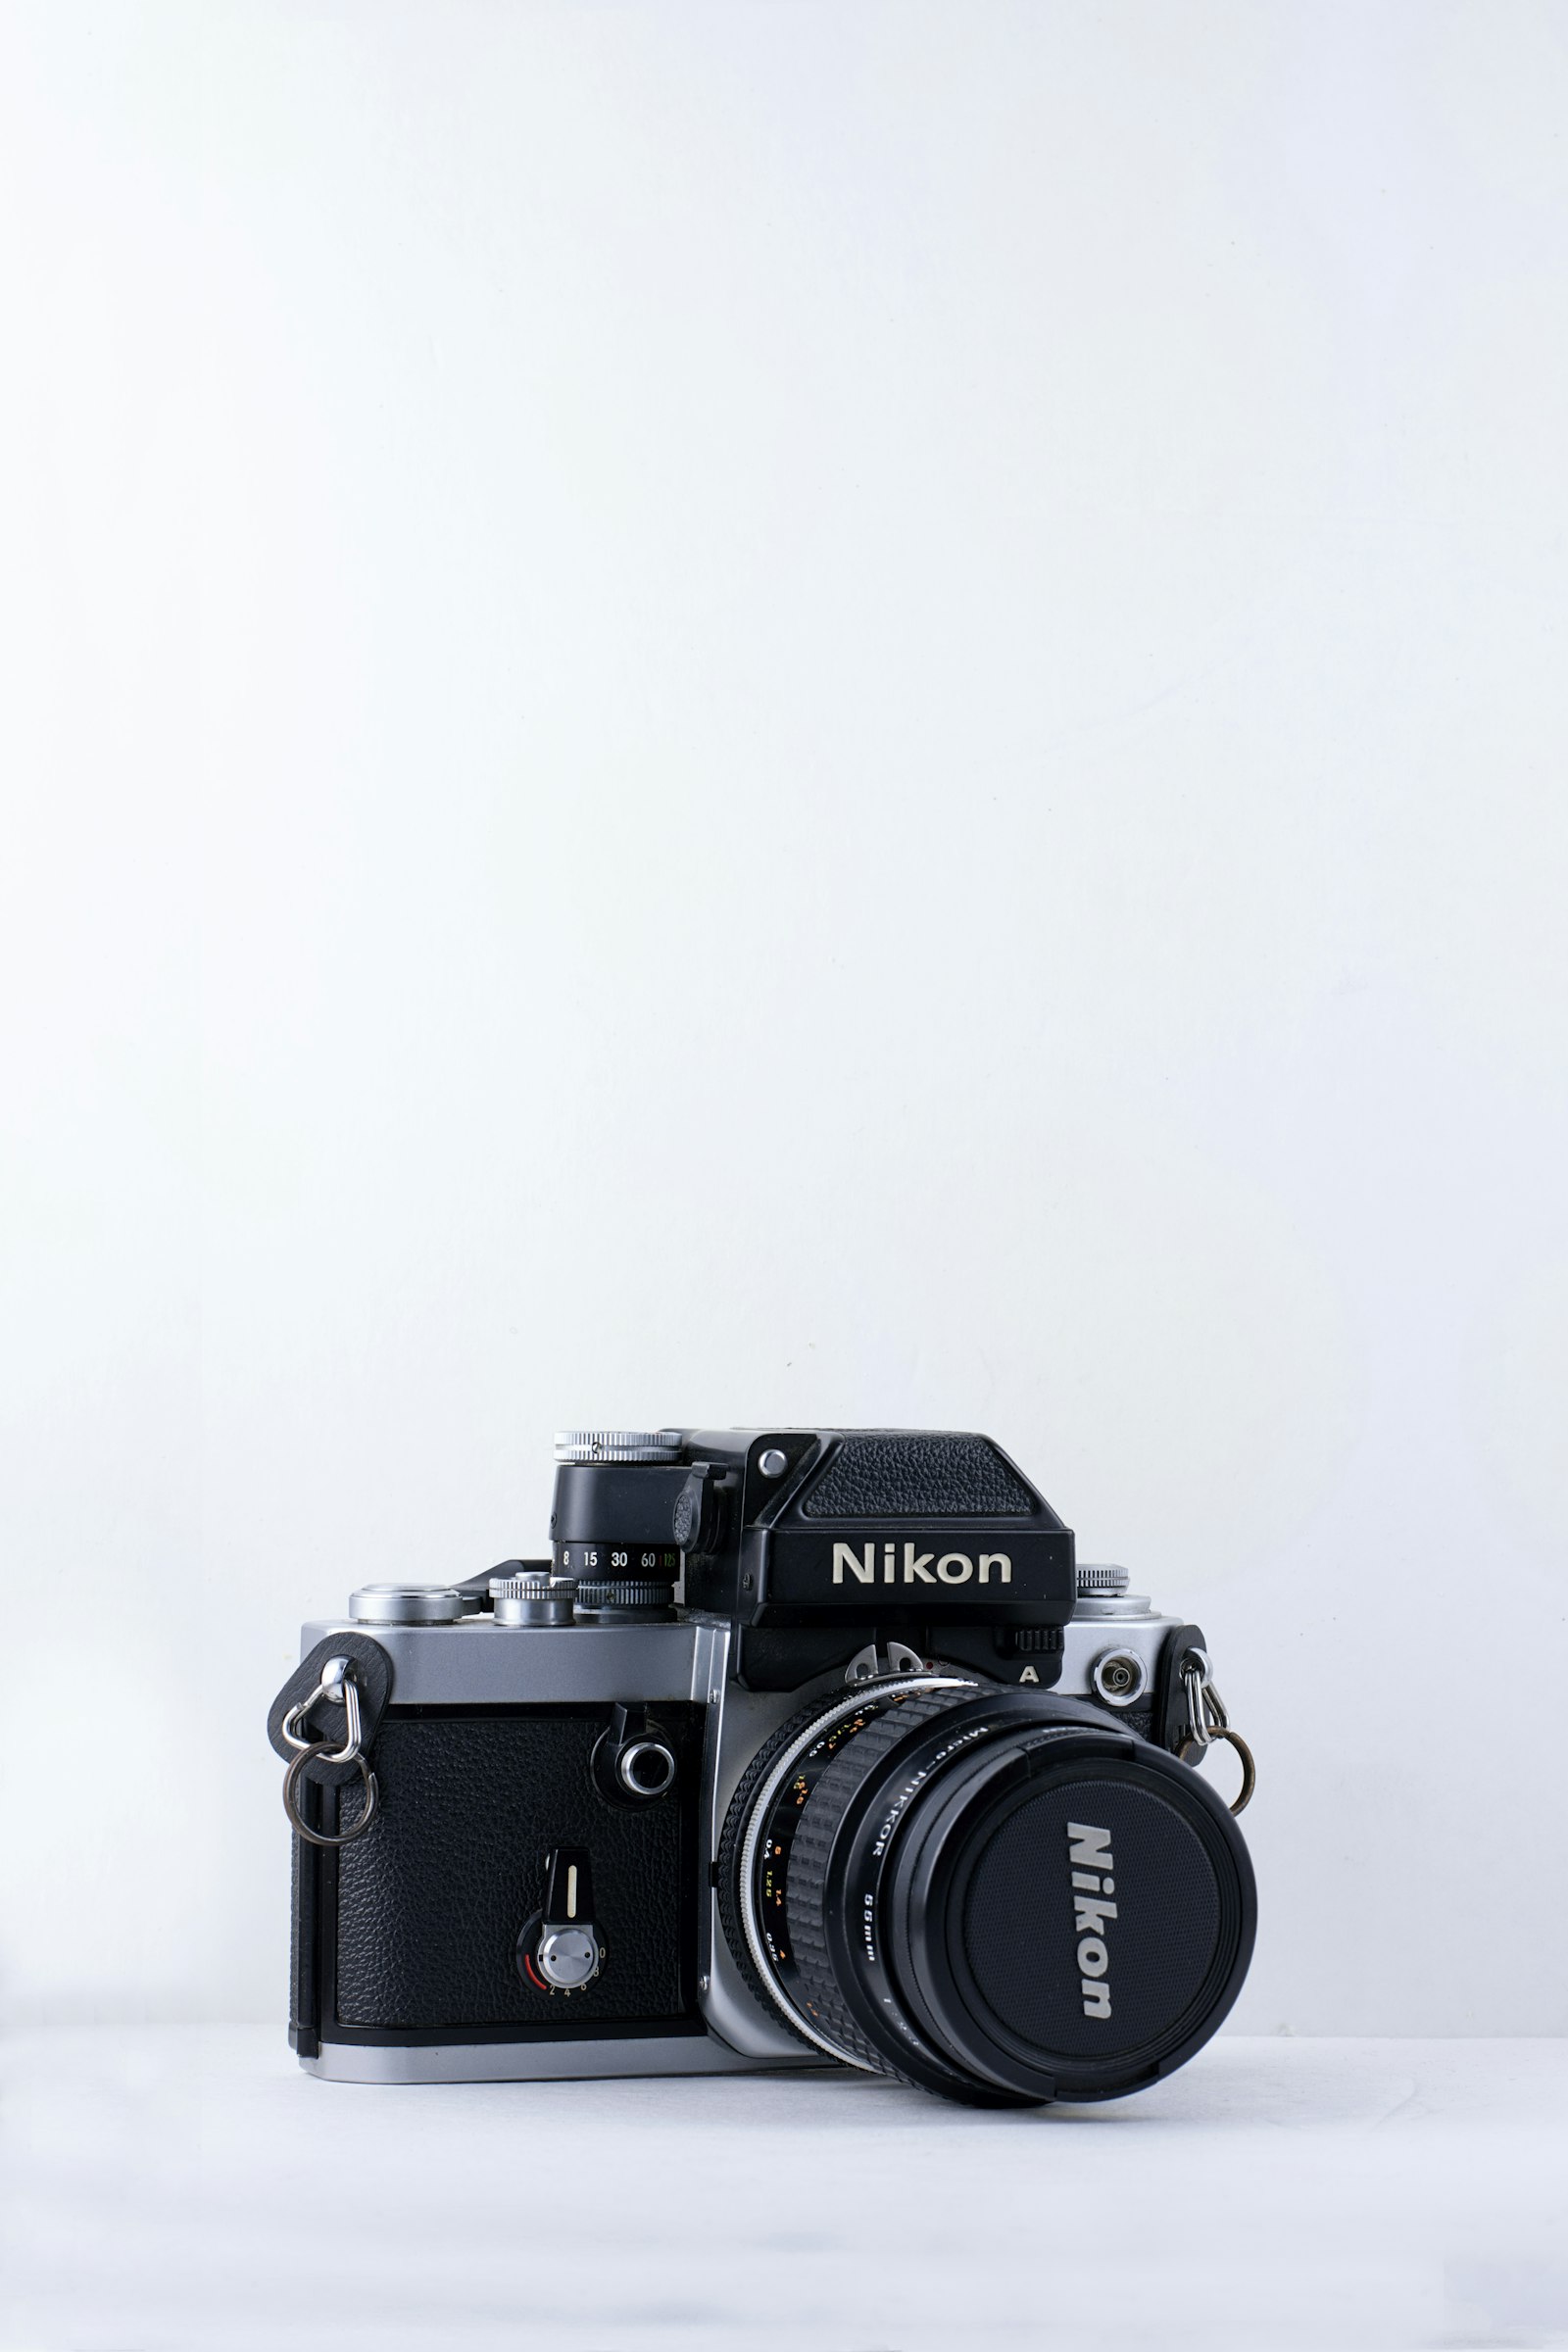 Nikon D7200 + Nikon AF-S Nikkor 50mm F1.8G sample photo. Black nikon camera against photography